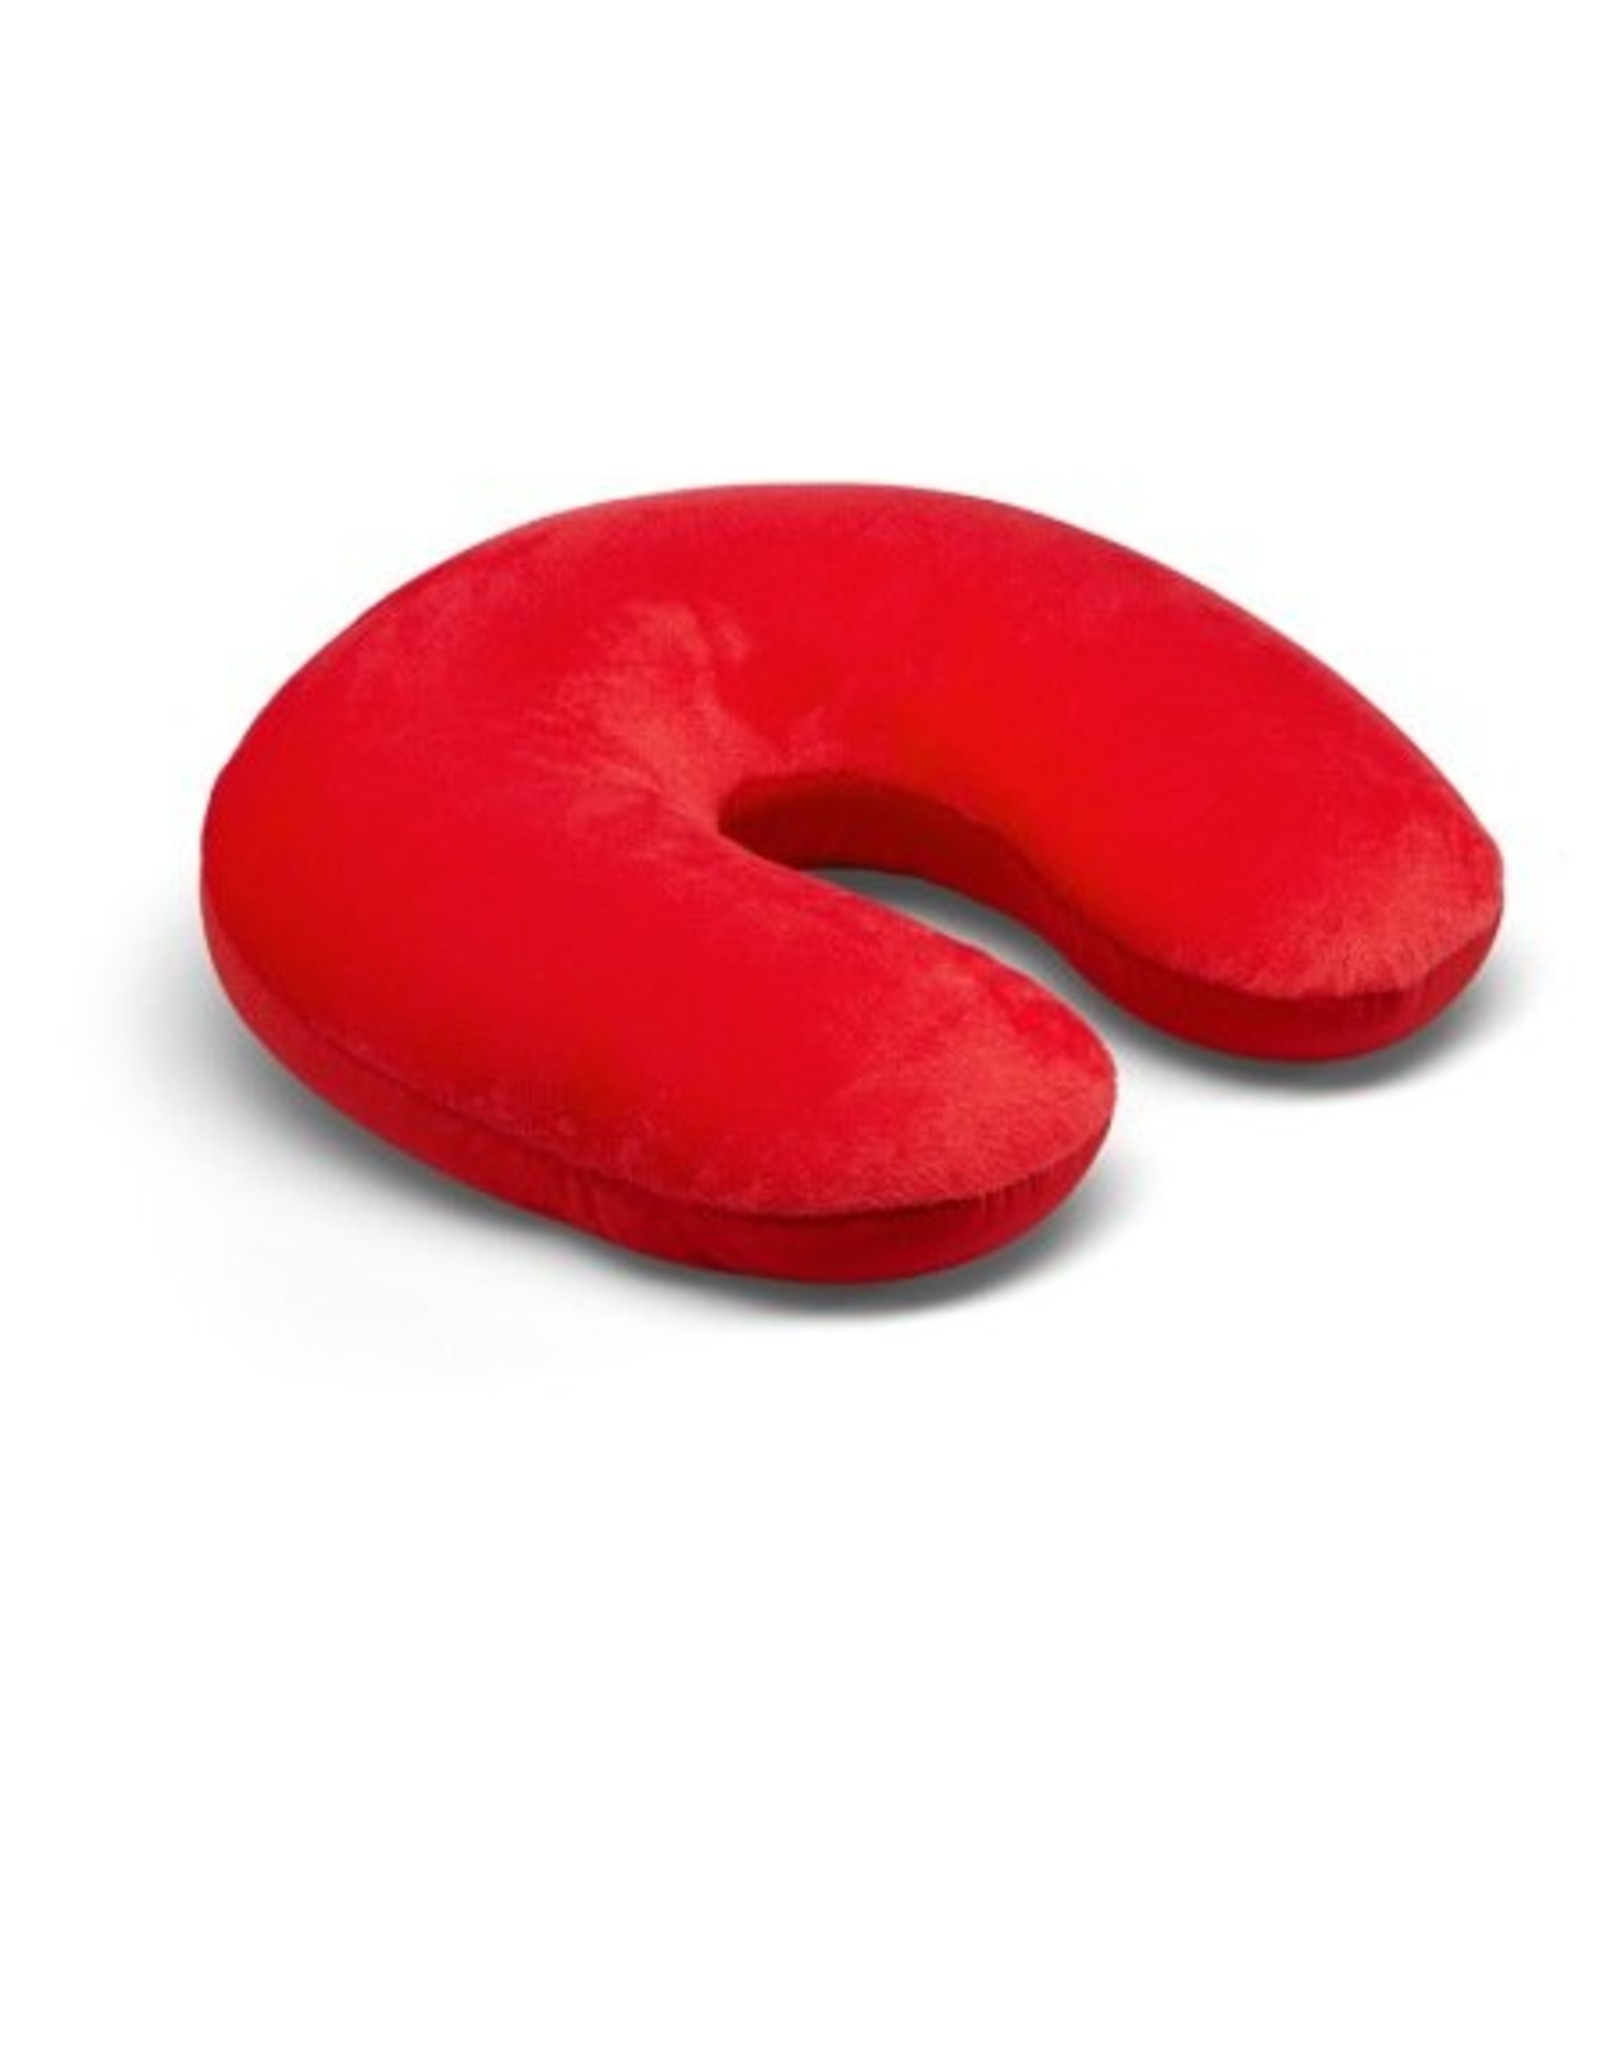 Kuschel-Maxx Kuschel-Maxx - Nack cushion Red ohne Knopf